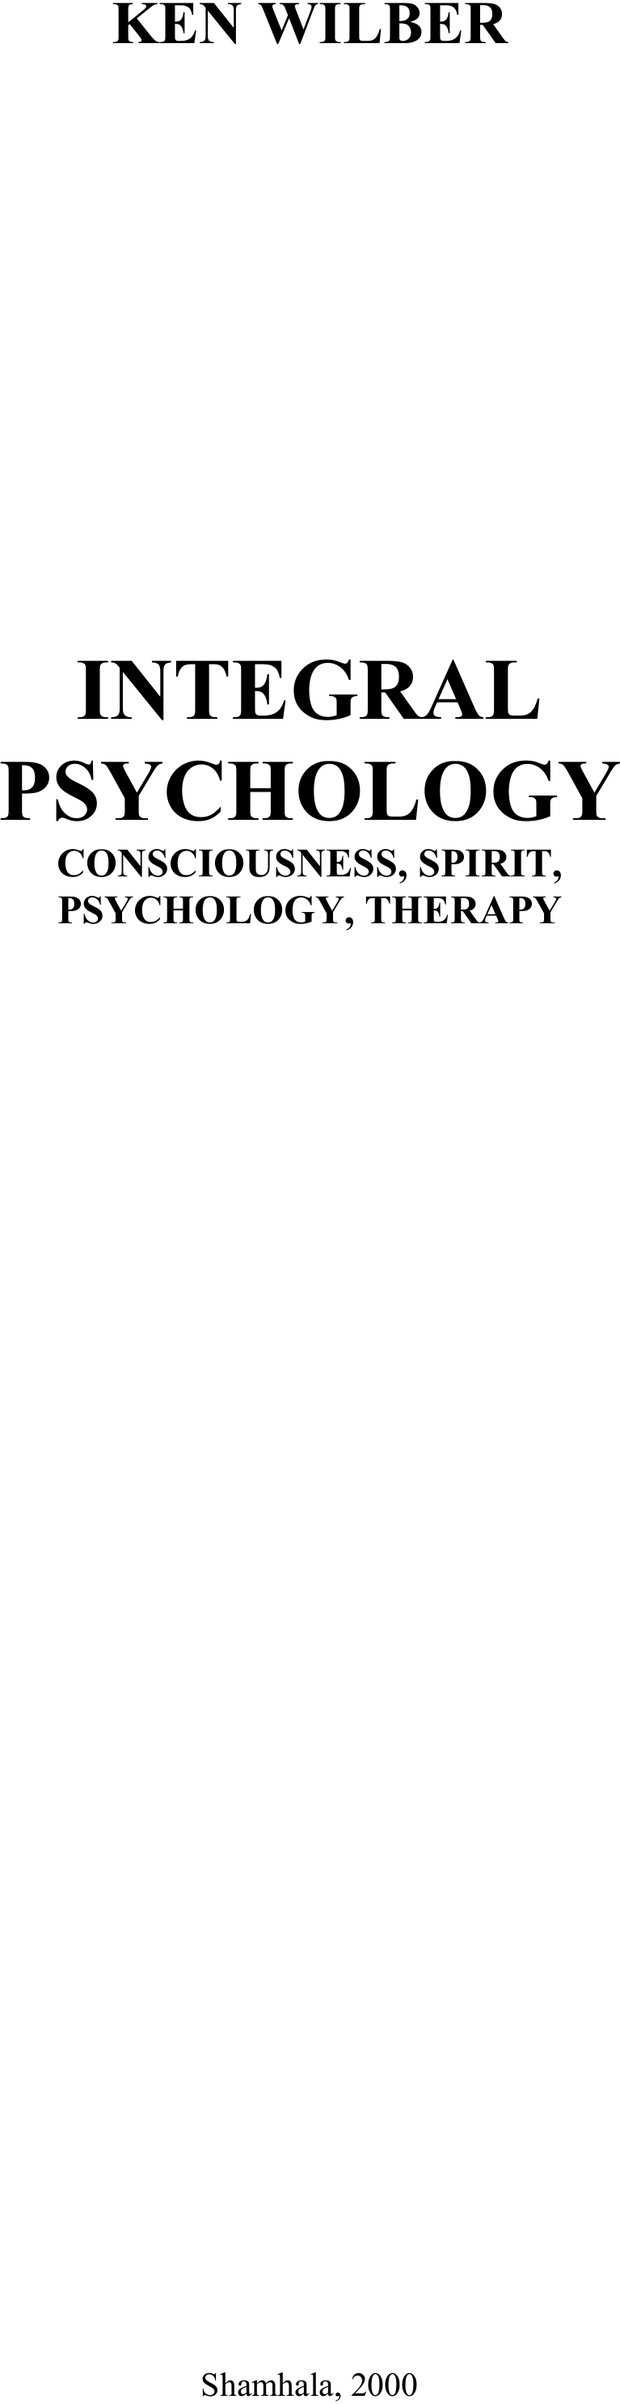 Обложка. Уилбер, "Интегральная психология. Сознание, Дух, Психология, Терапия"